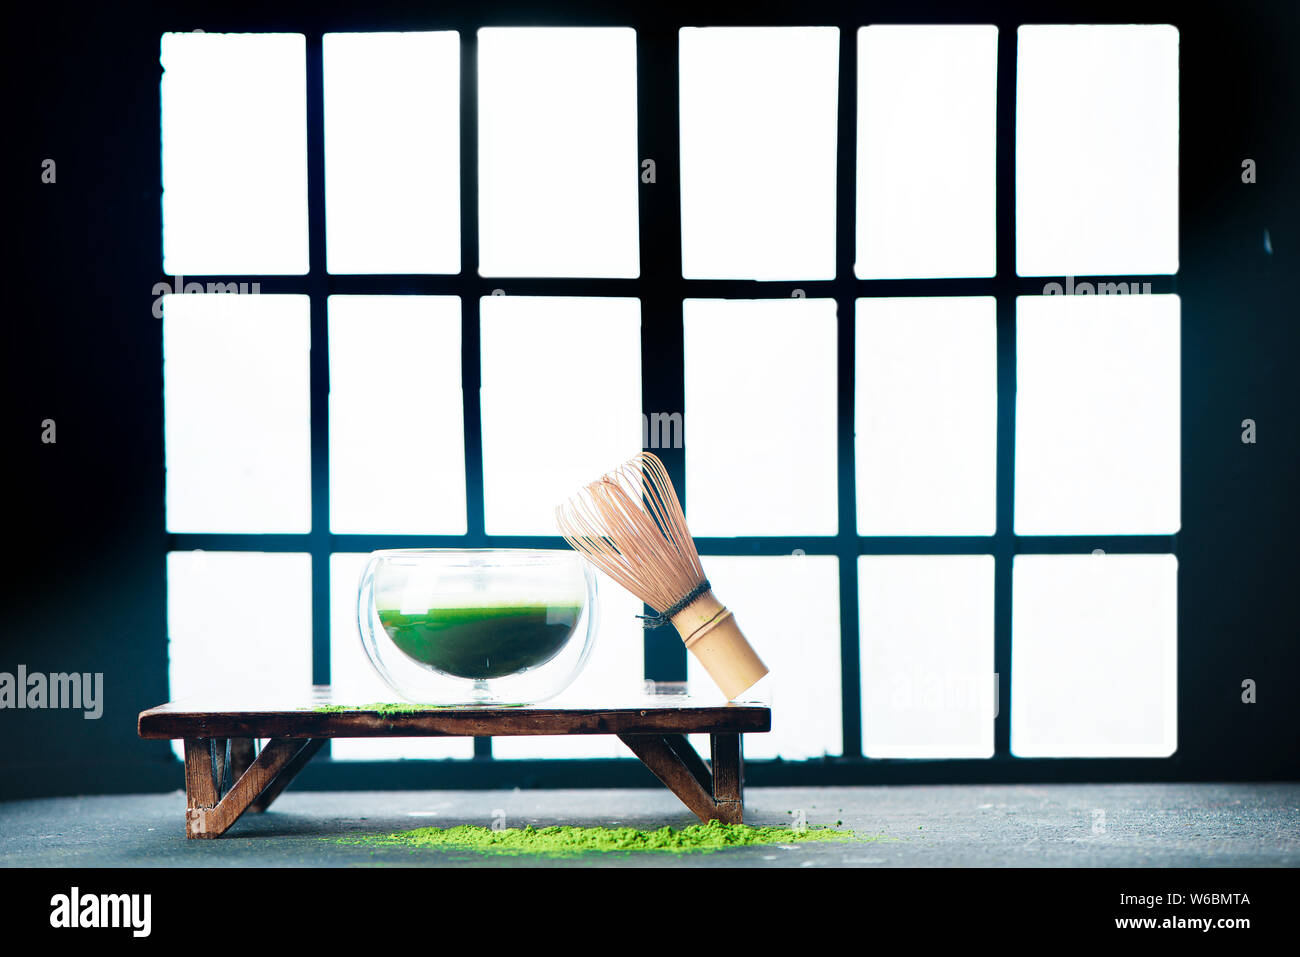 Tè verde Matcha testata con Shoji porte scorrevoli dello sfondo. Tradizionale camera giapponese, la preparazione per la cerimonia del tè Foto Stock